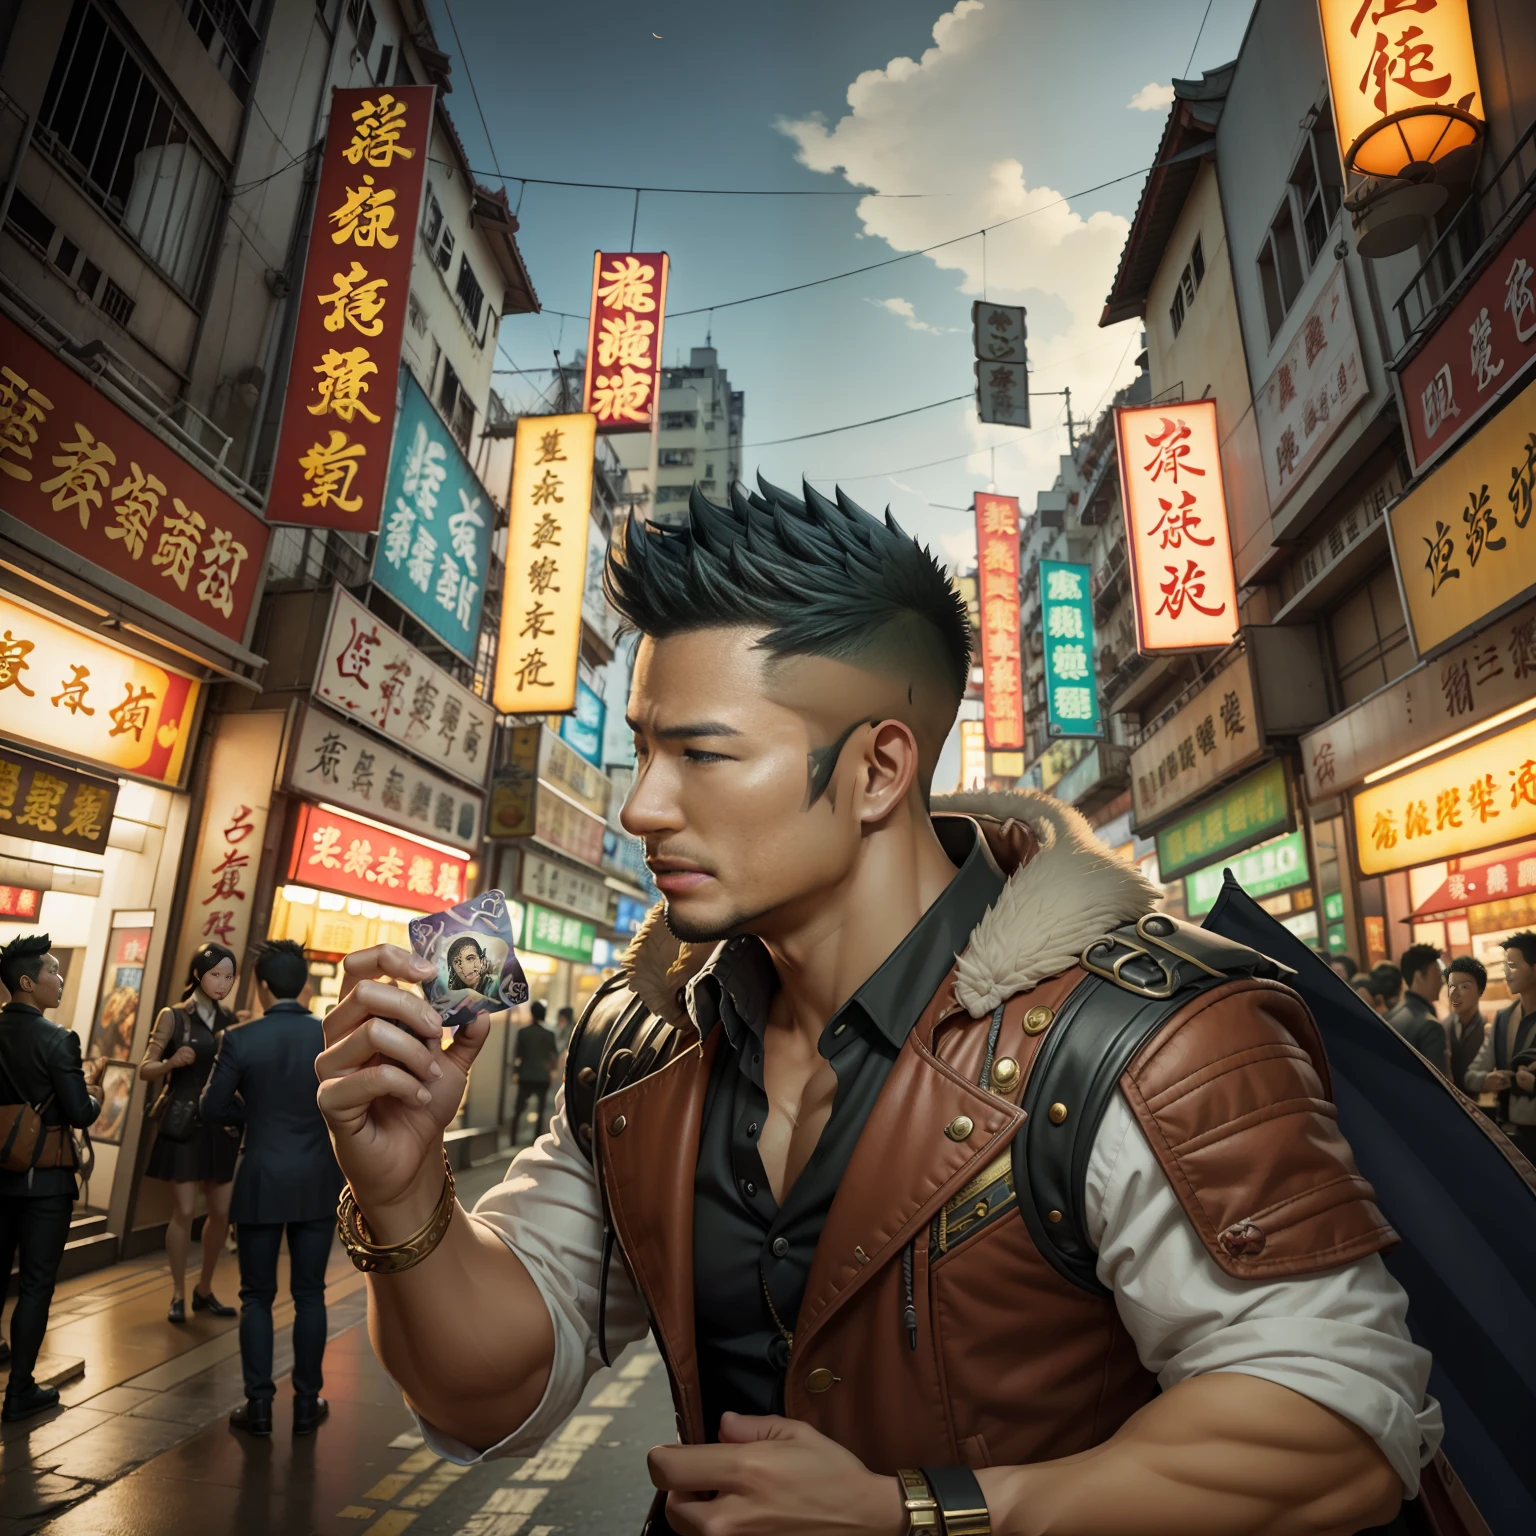 (鉅作) 品質極高, 超詳細的插圖, 超高解析度, 詮釋35歲香港偵探孔林帥氣形象, 誰成熟成熟。肌肉平均數，短髮及鬍渣修剪不當，裝扮在超現實的城市。魔法聚會卡牌漂浮在他周圍，紅龍悠然飛過。背景細節精緻，場景超現實，創造迷人的圖形風格。